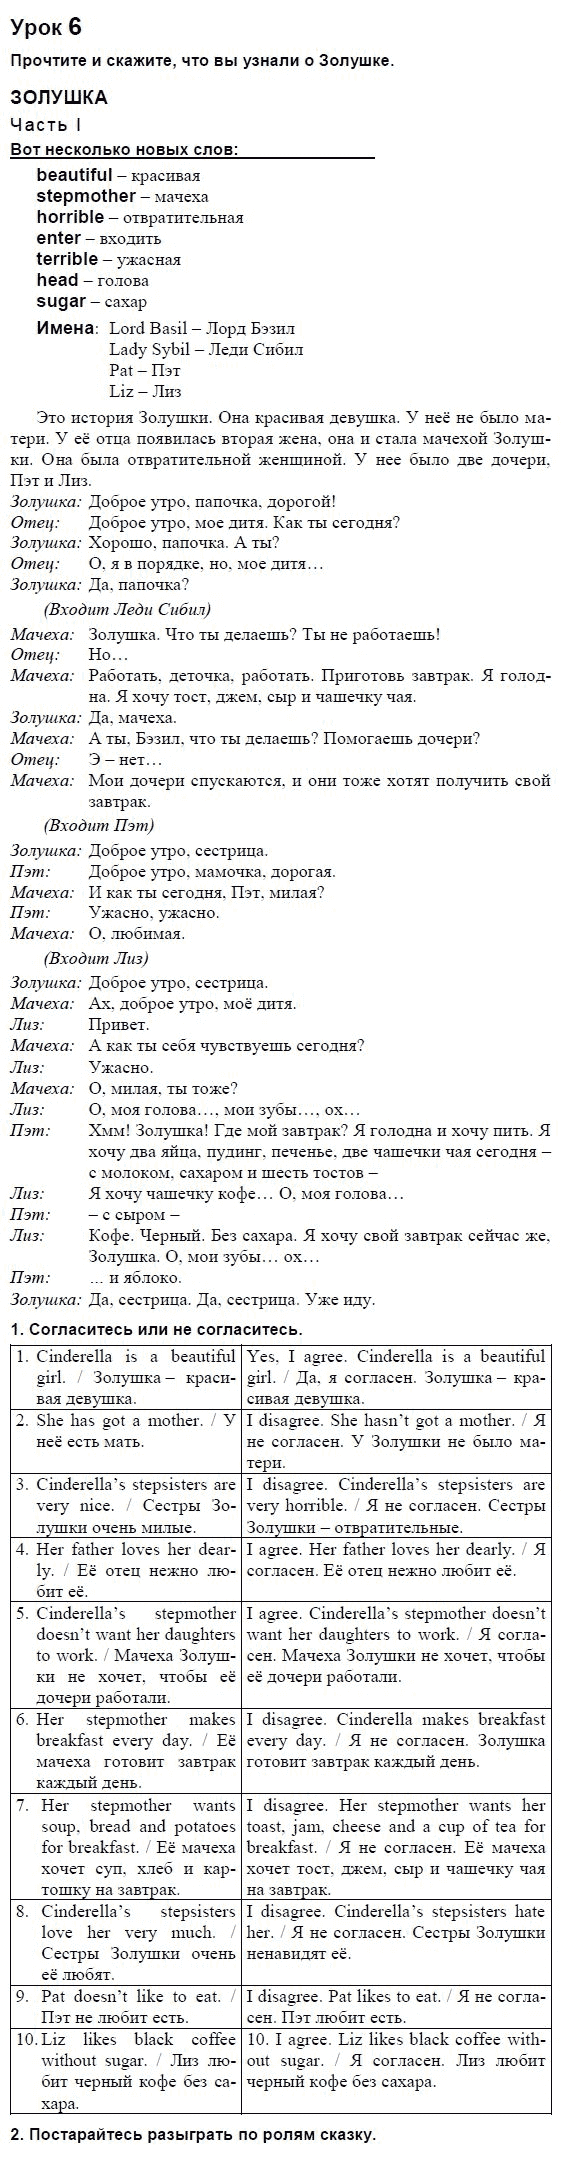 Английский язык, 3 класс, И.Н. Верещагина, 2006-2012, Книга для чтения Задание: 6